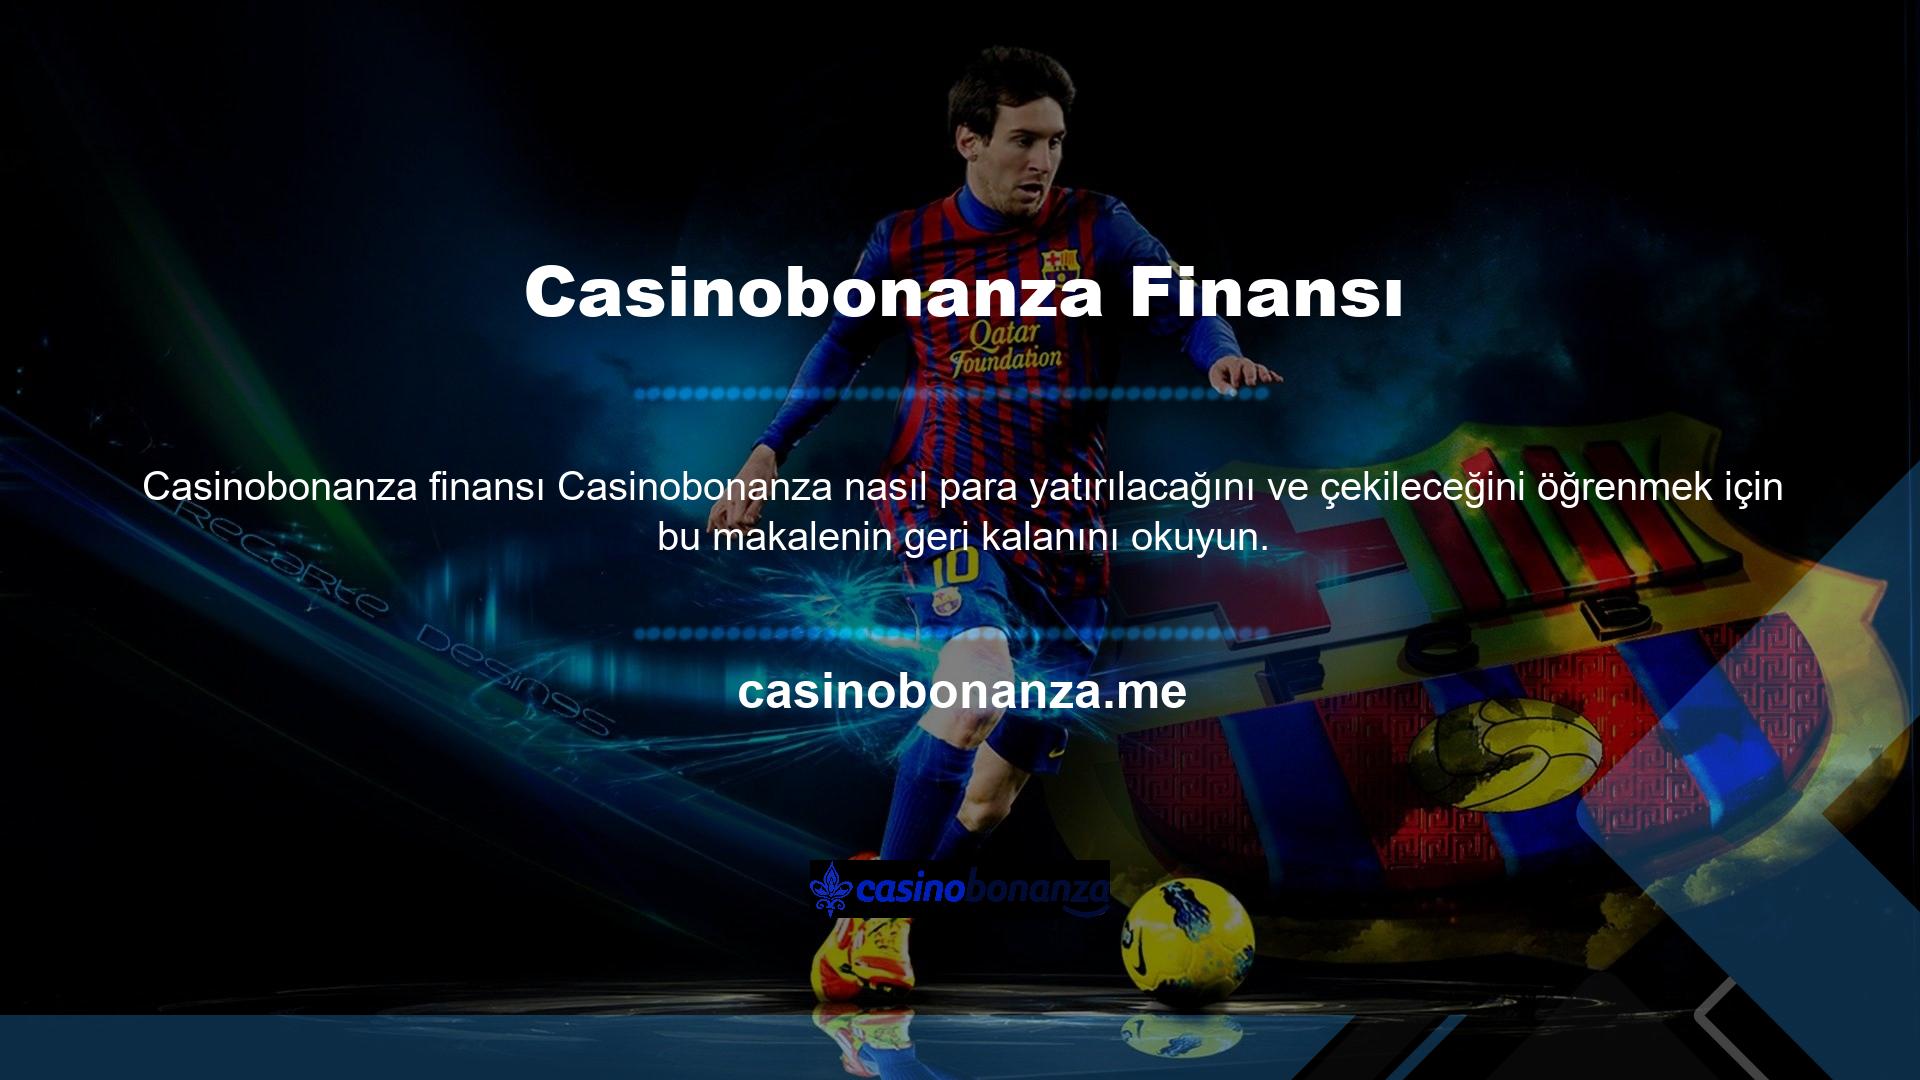 Dünyanın en başarılı bahis platformlarından biri olan Casinobonanza ile üstünlüğü yaşayacaksınız